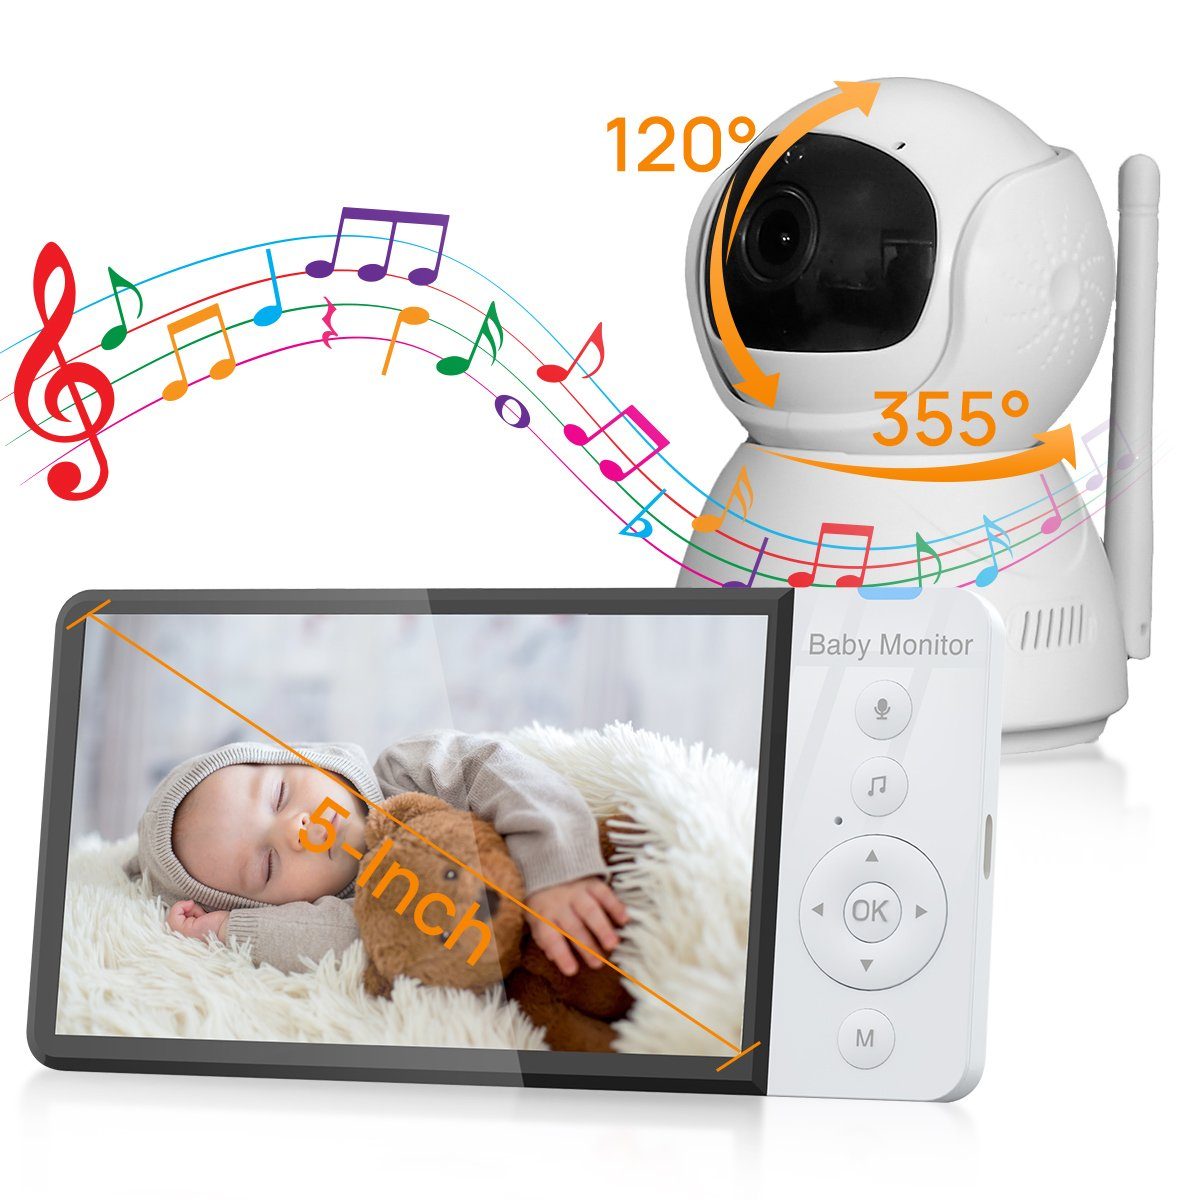 https://i.otto.de/i/otto/56c73881-8ad0-42f7-a907-7f81e0fc05f3/vsiuo-video-babyphone-video-babyphone-mit-kamera-5-0-digital-lcd-bildschirm-5000-mah-babymonitor-mit-vox-modus-nachtsicht-temperatursensor-schlaflieder-zwei-wege-audio-gegensprechfunktion-720p-ips-bildschirm-2-4ghz-fhss-verschluesselungstechnologie.jpg?$formatz$